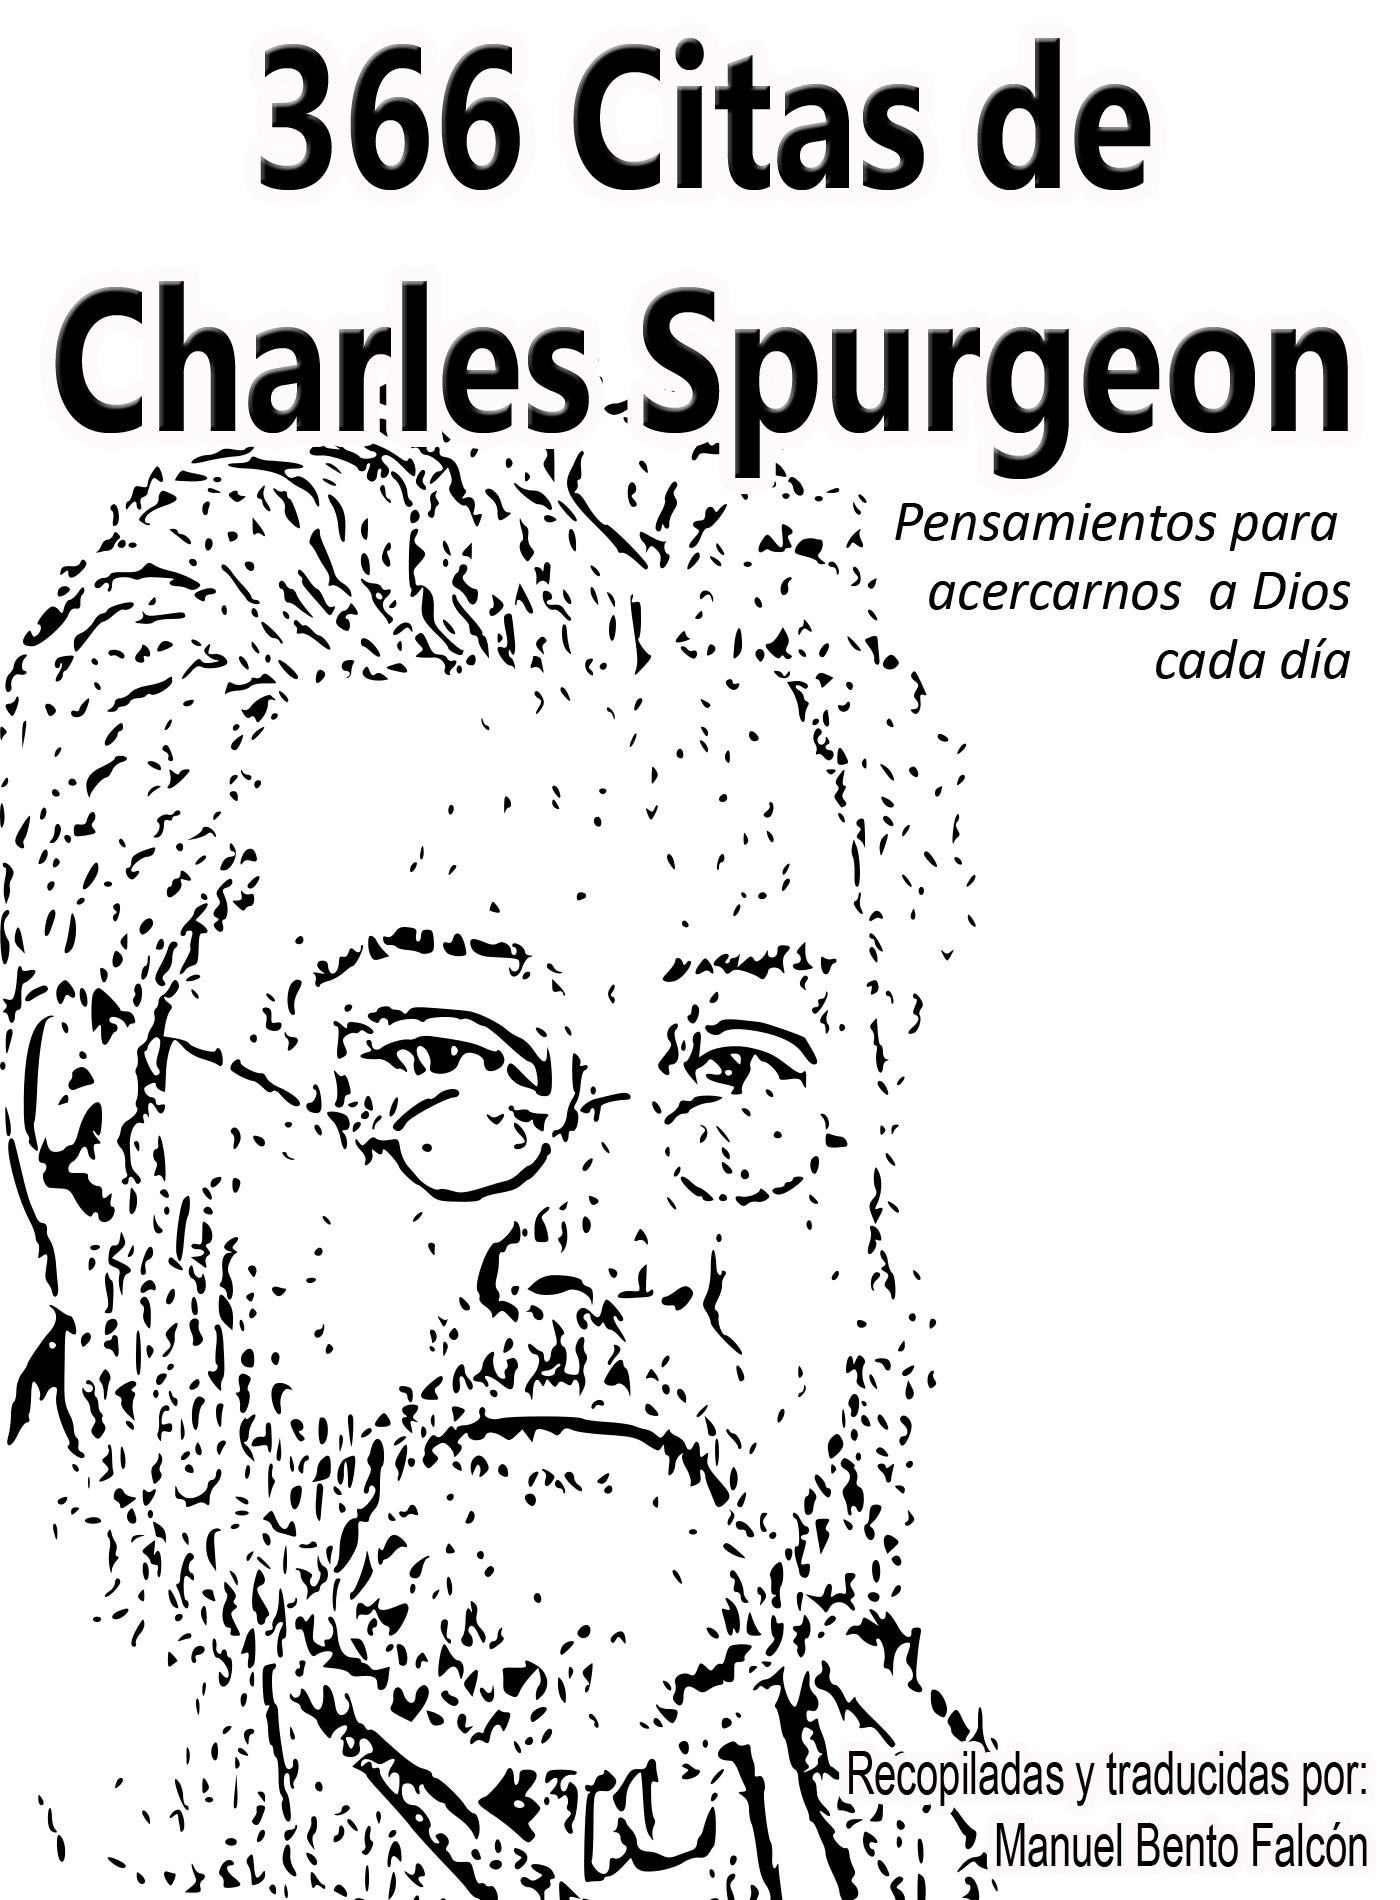 366 Citas de Charles Spurgeon: Pensamientos para acercarnos a Dios cada día (Spanish Edition)